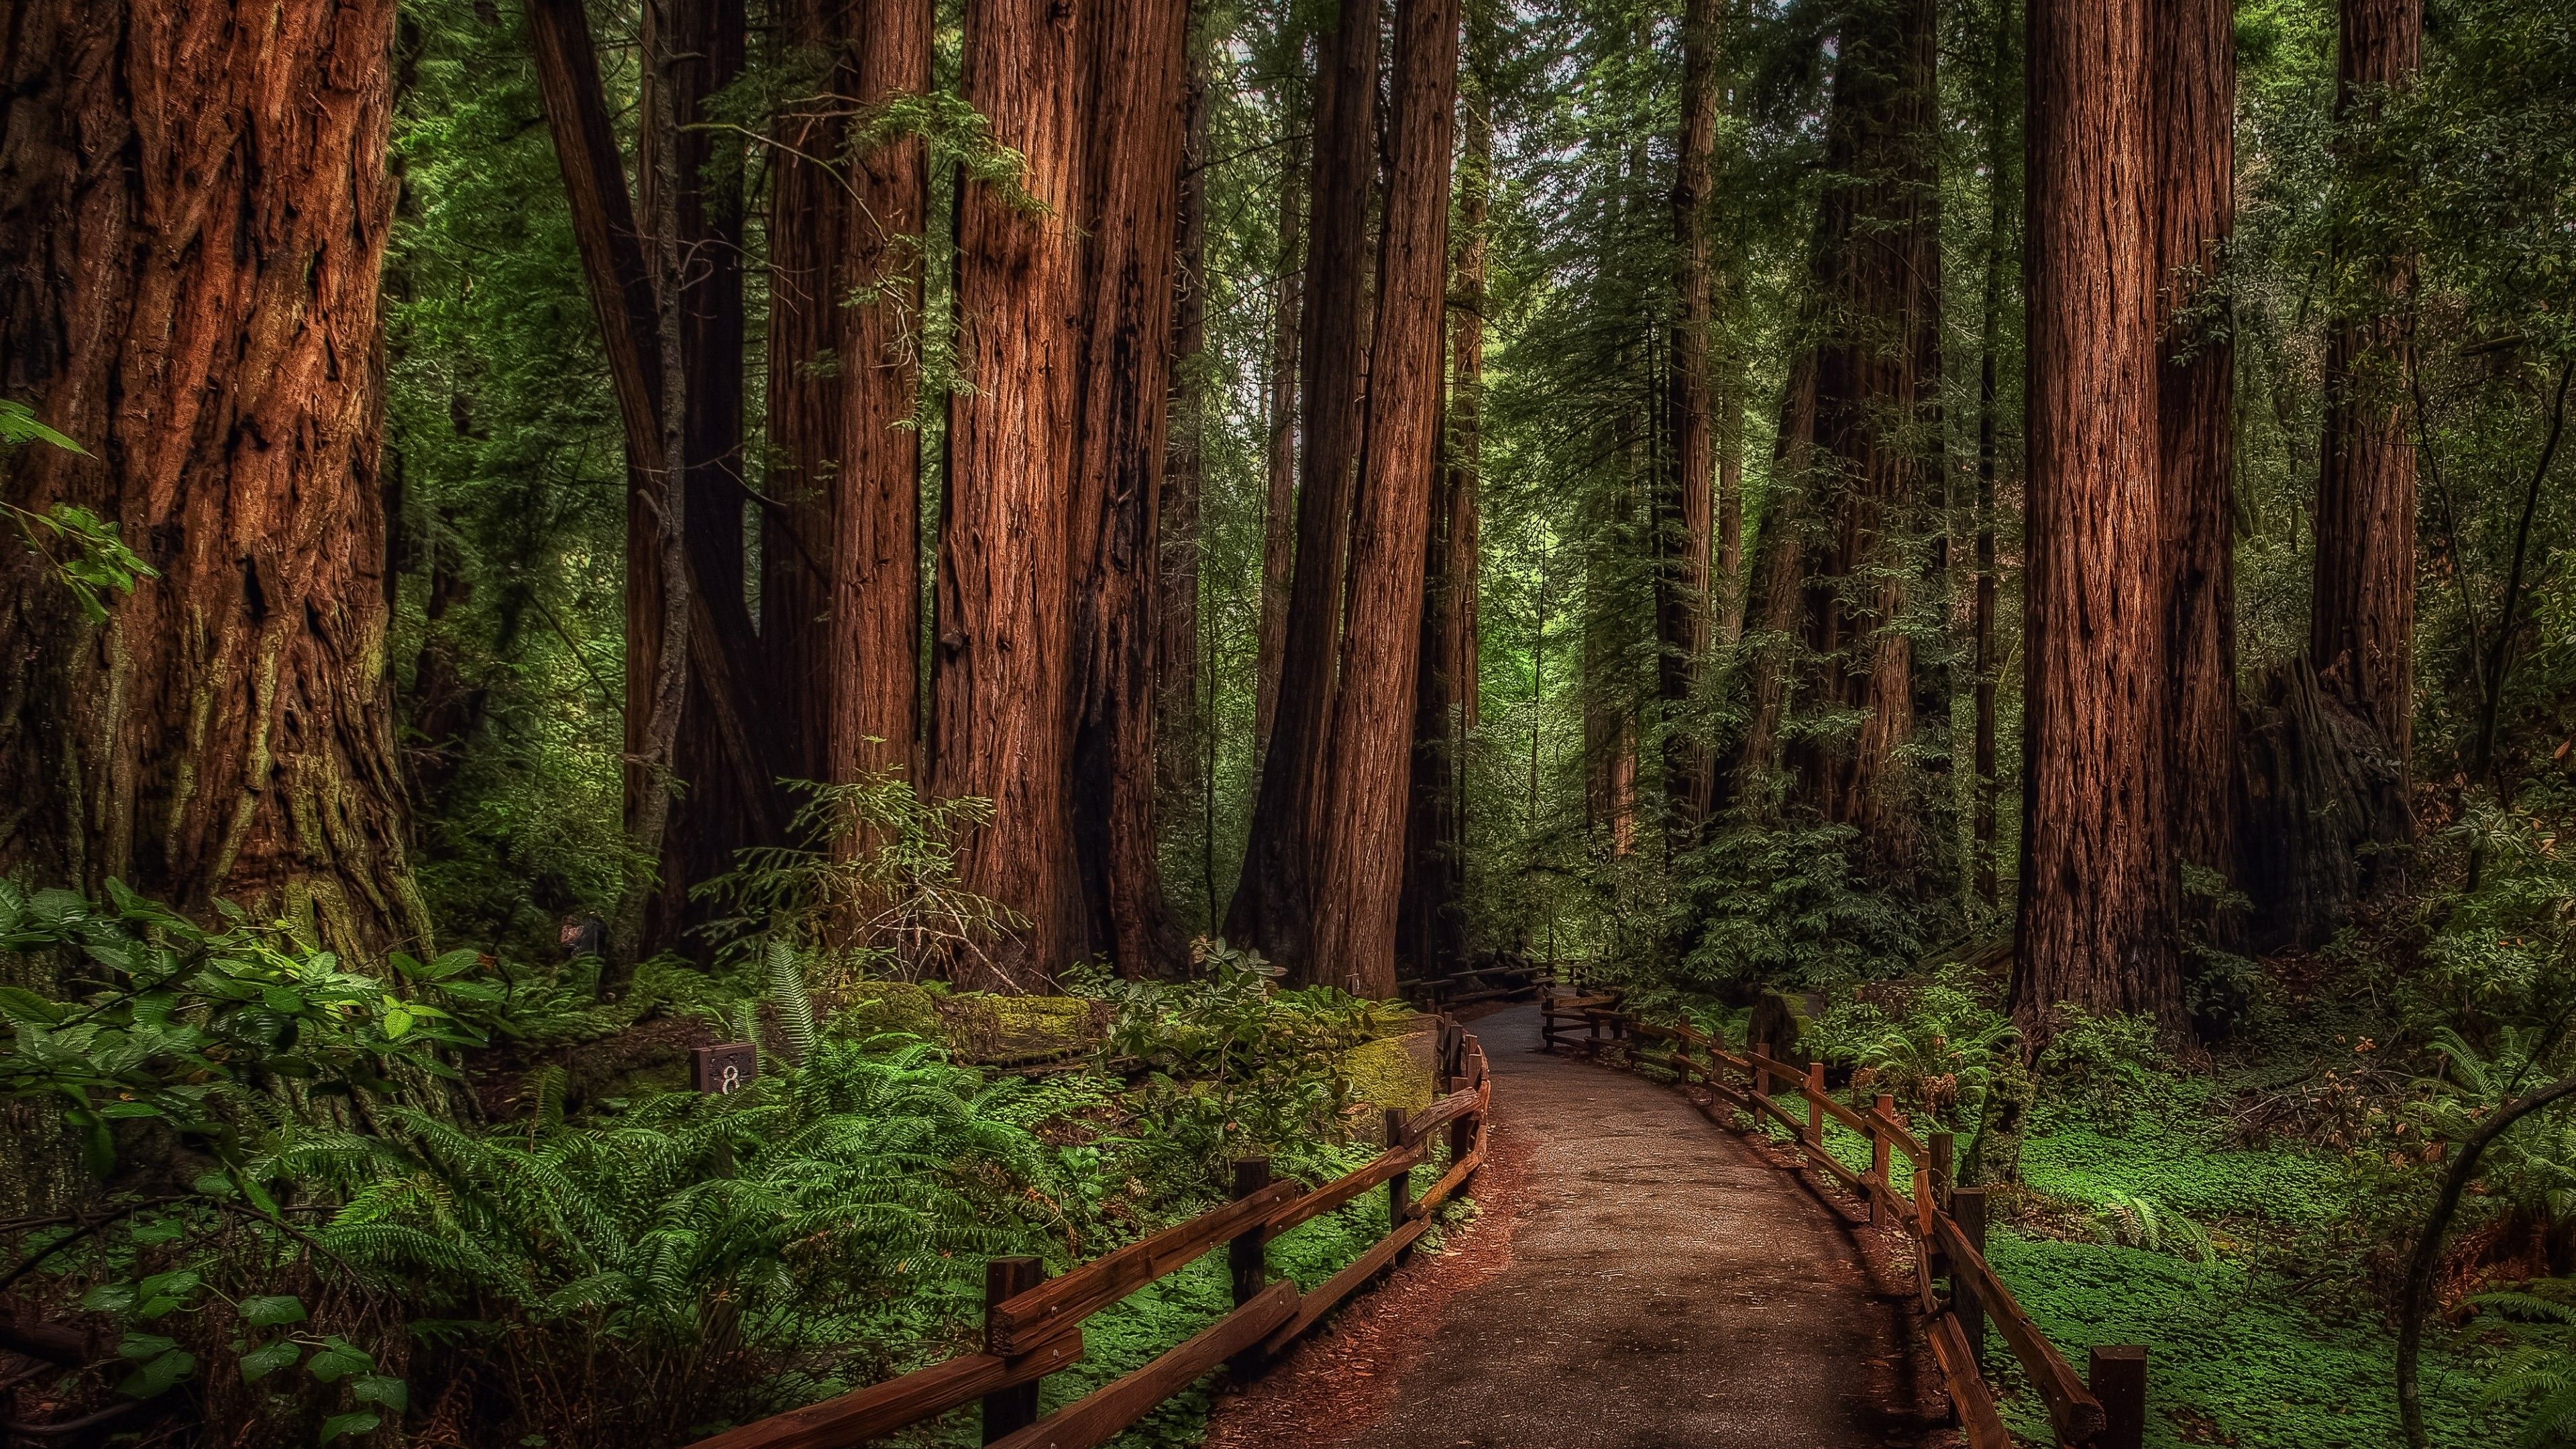 Redwood trees, Desktop wallpapers, Majestic wonders, Nature's splendor, 3840x2160 4K Desktop